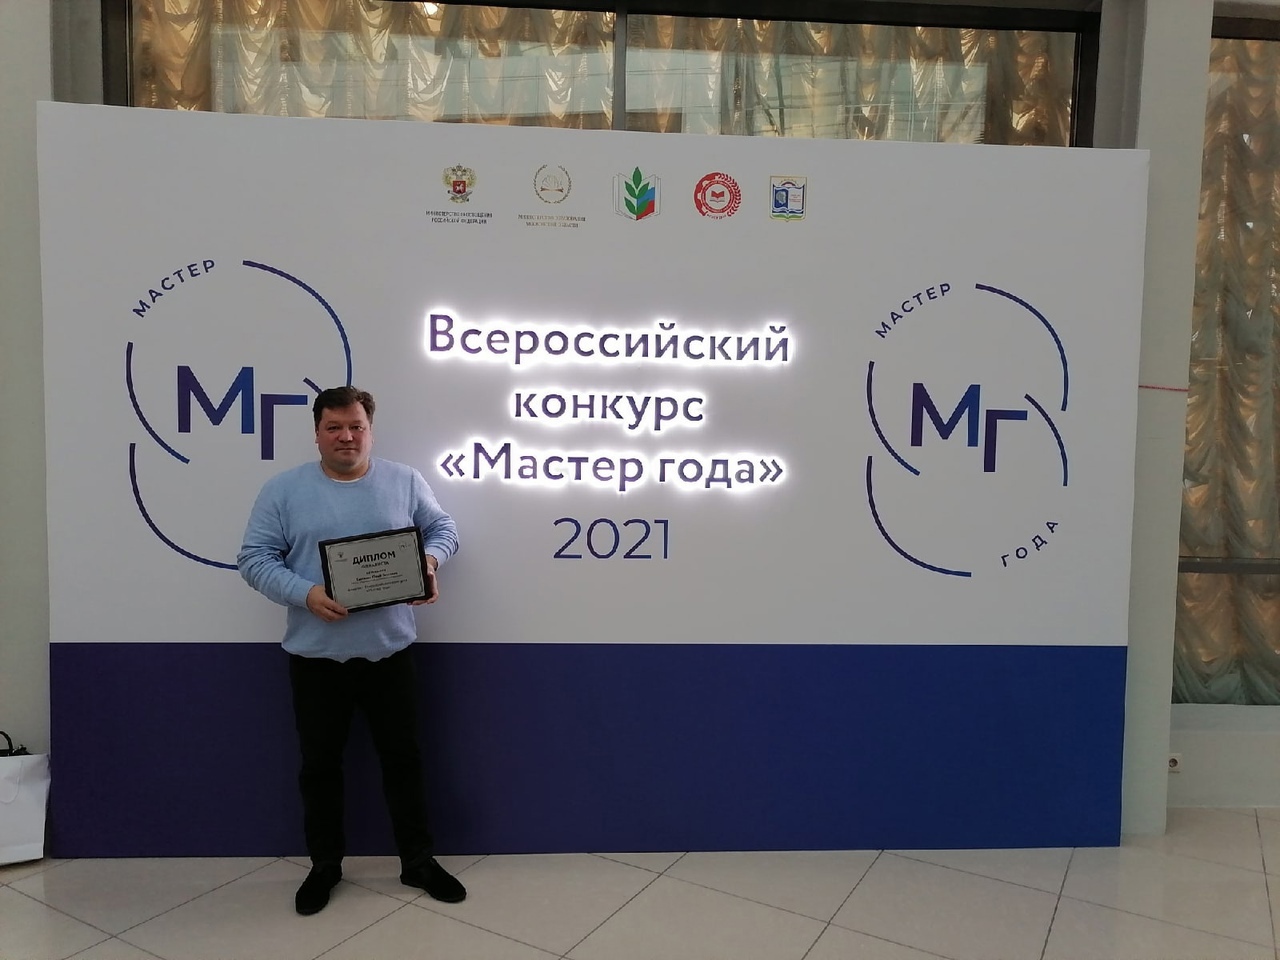 Ханталин Ю.П. - финалист конкурса "Мастер года 2021"